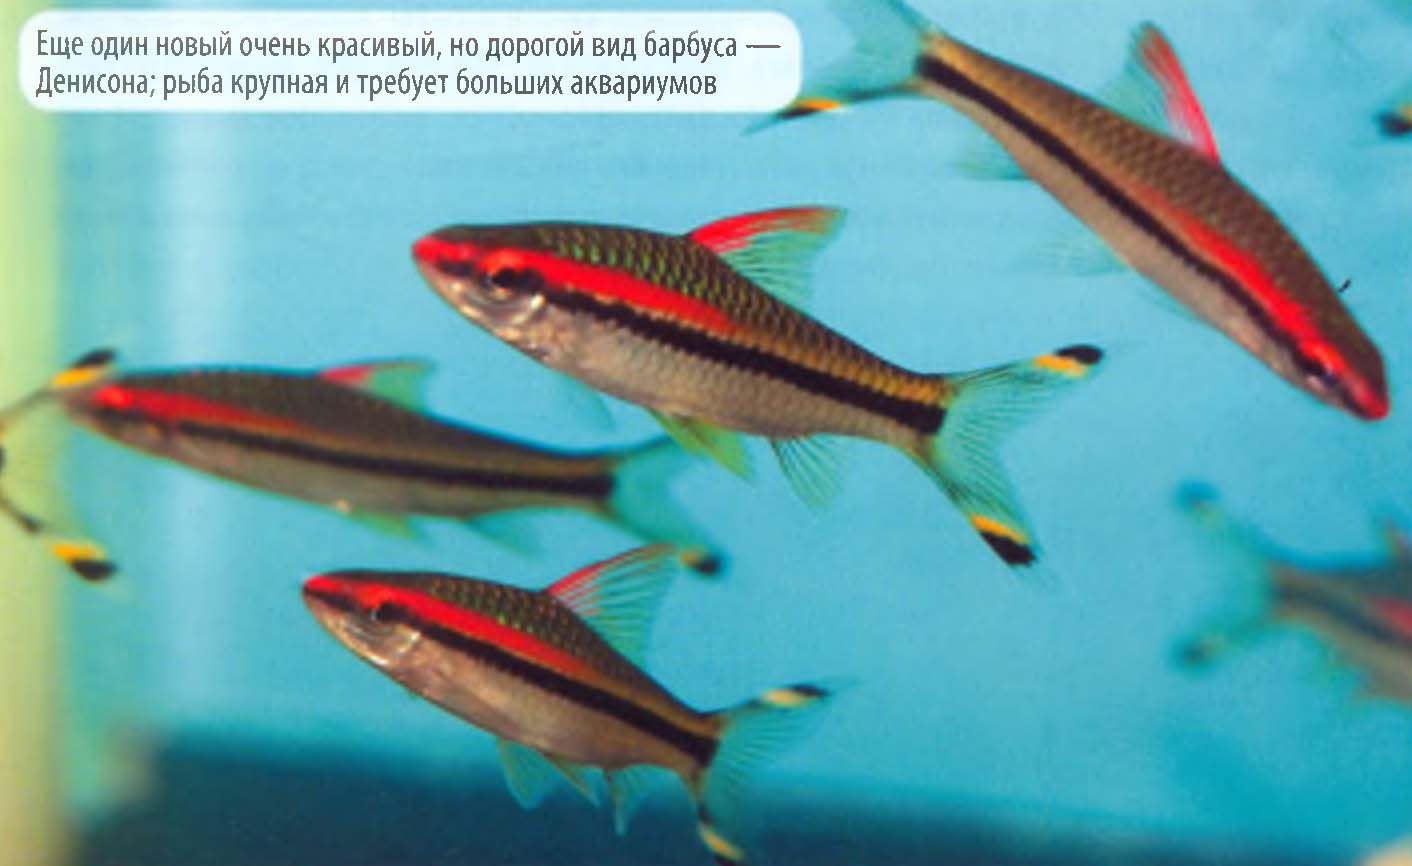 Еще один новый очень красивый, но дорогой вид барбуса — Денисона; рыба крупная и требует больших аквариумов.
